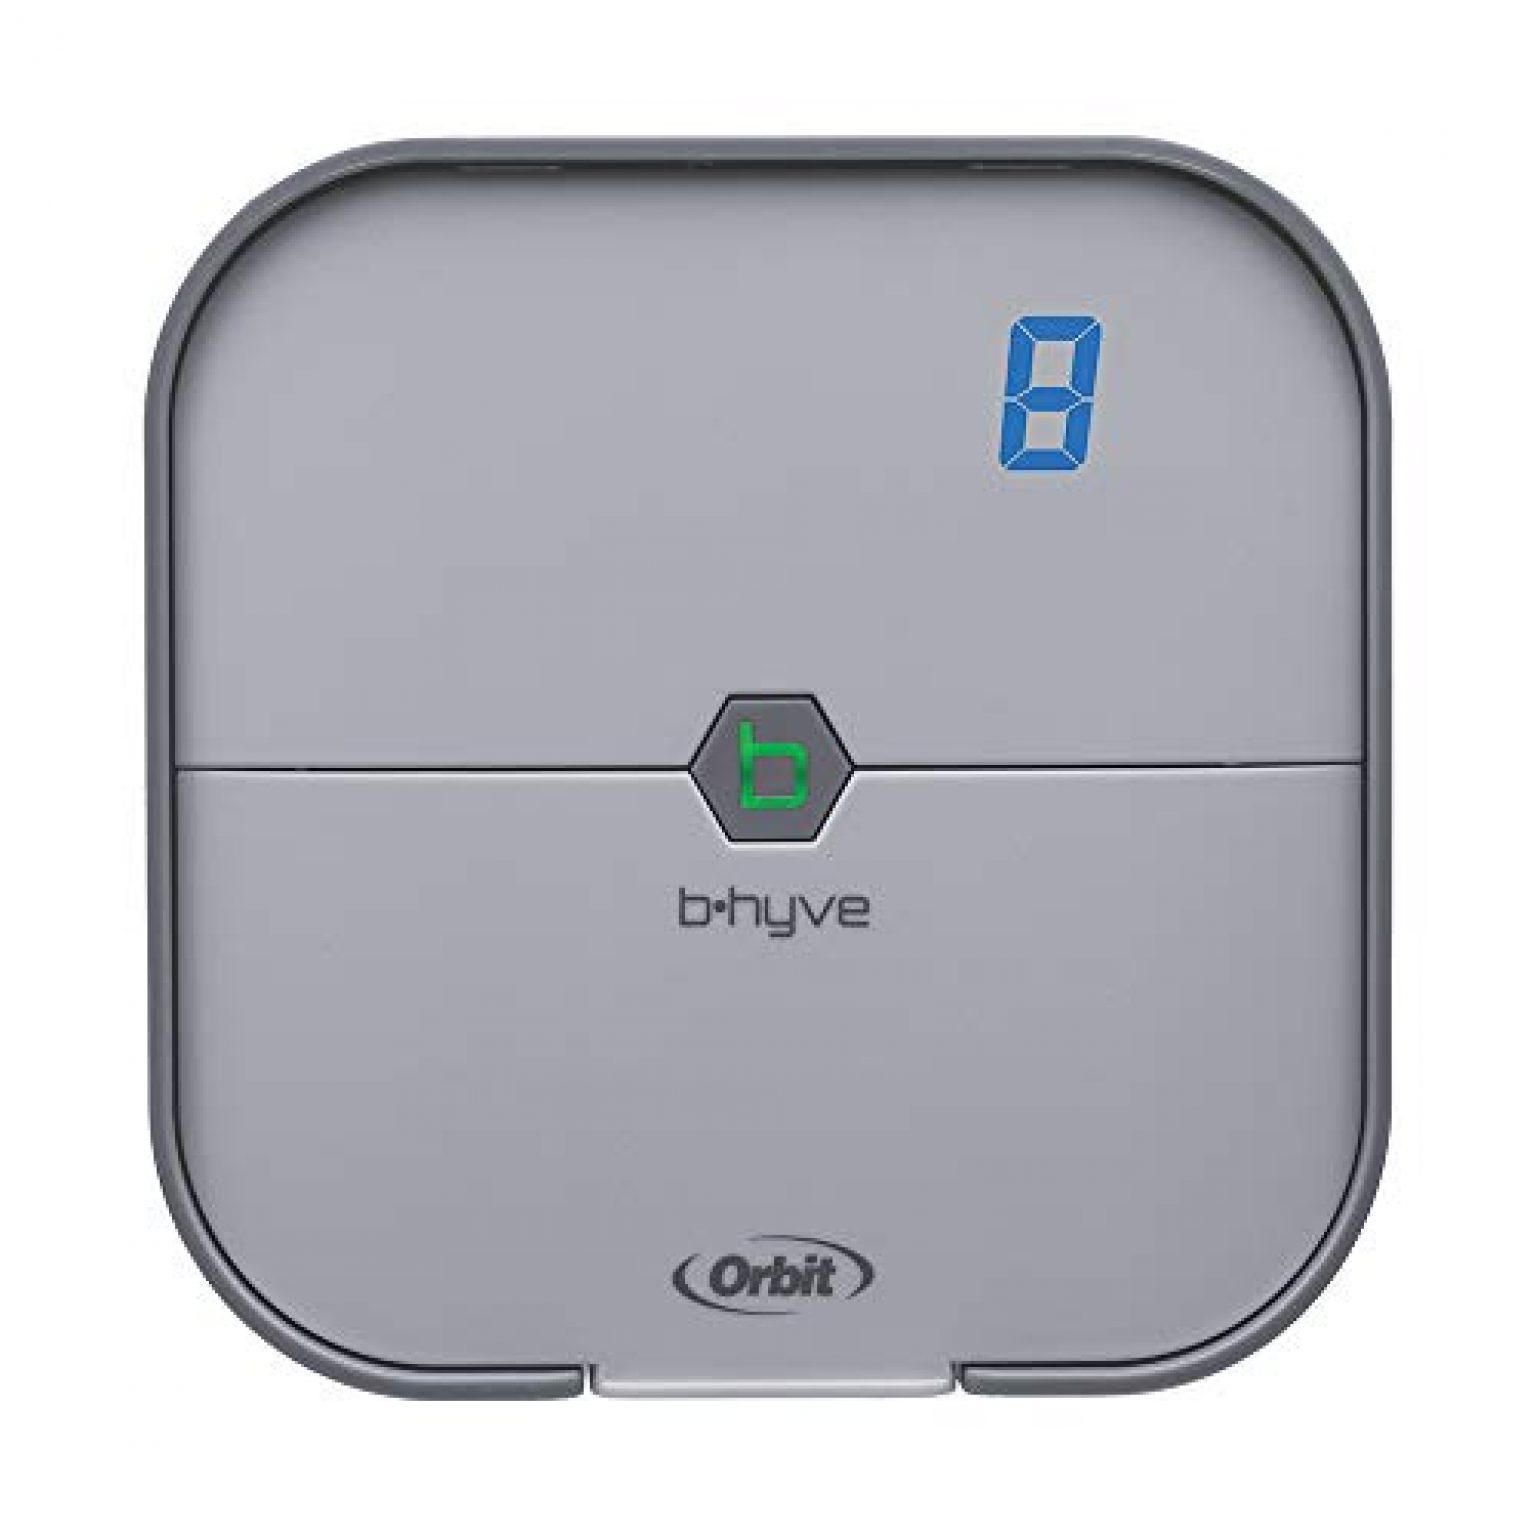 Orbit B hyve 8 Zone Smart Indoor Sprinkler Controller Altech 